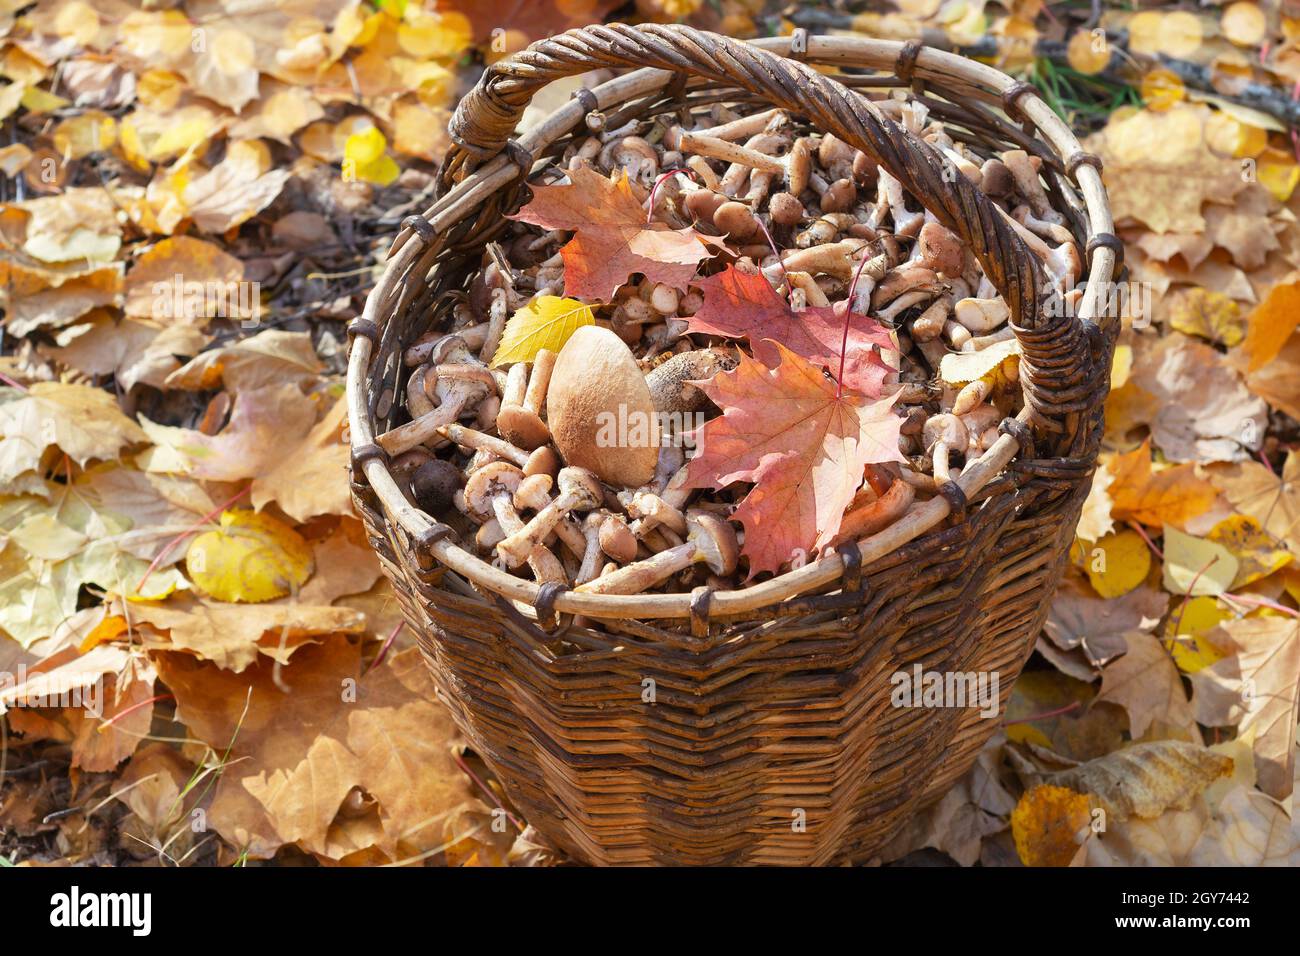 Ein mit Pilzen gefüllter Korb steht auf gefallenen Blättern im Herbstwald.  Selektiver Fokus Stockfotografie - Alamy